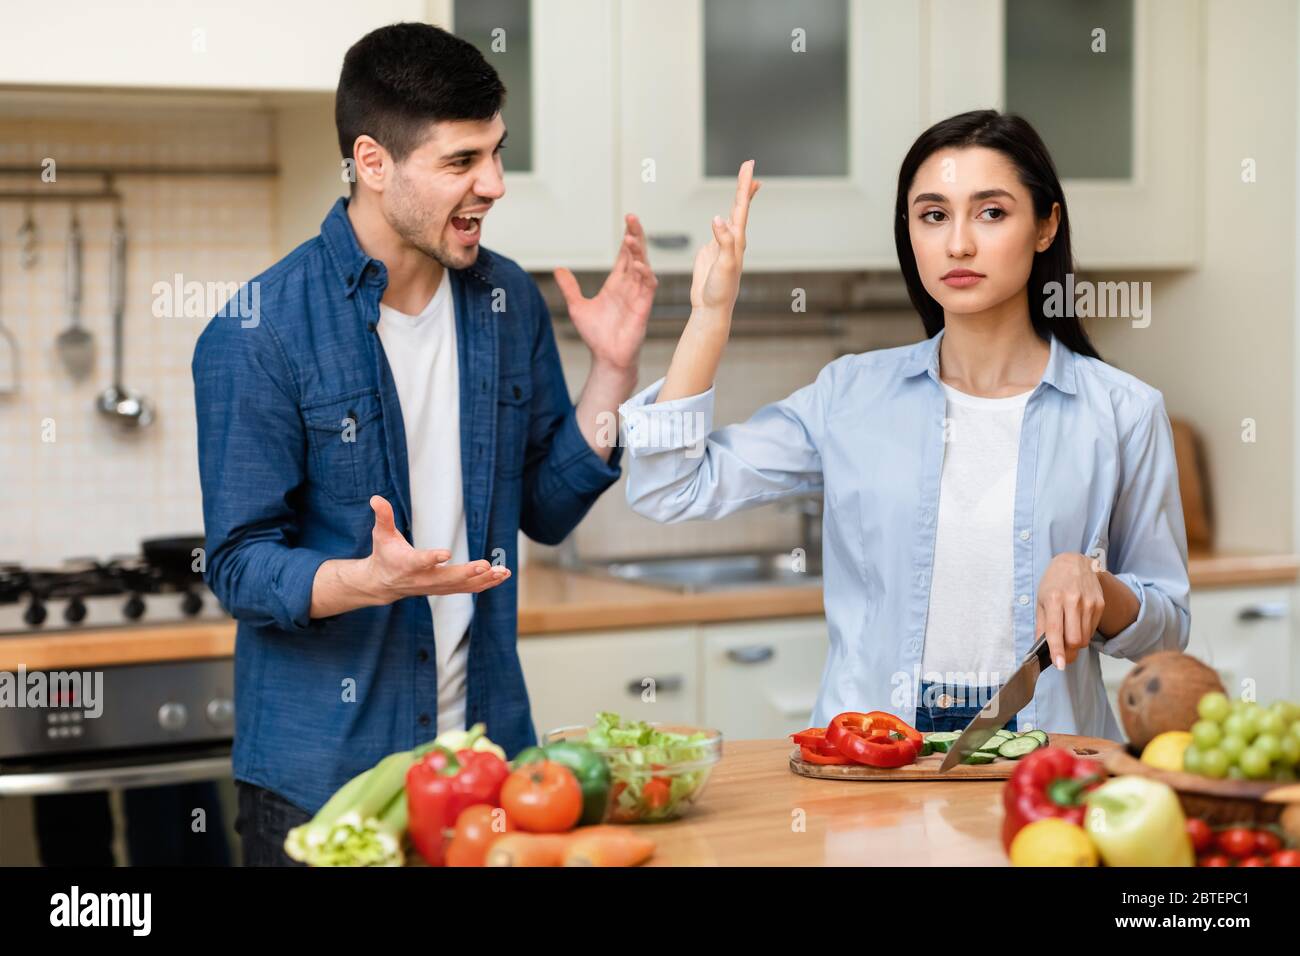 Un jeune couple se disputant dans la cuisine moderne Banque D'Images